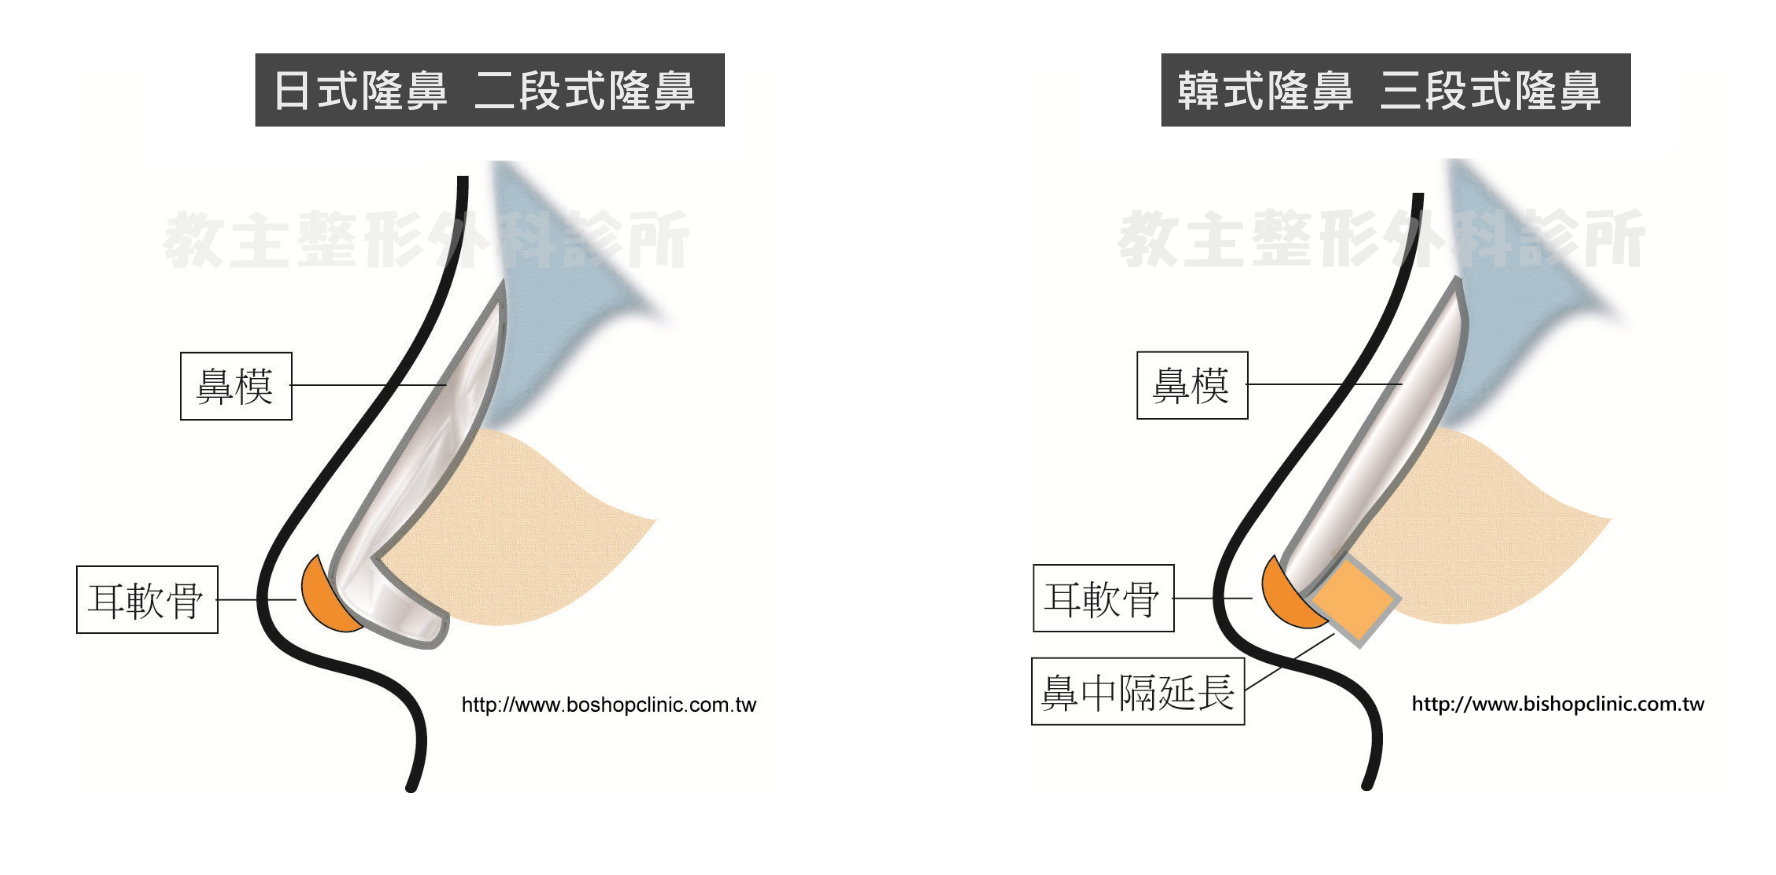 鼻整形分類,隆鼻術式,日式鼻雕二段式隆鼻,韓式隆鼻三段式隆鼻